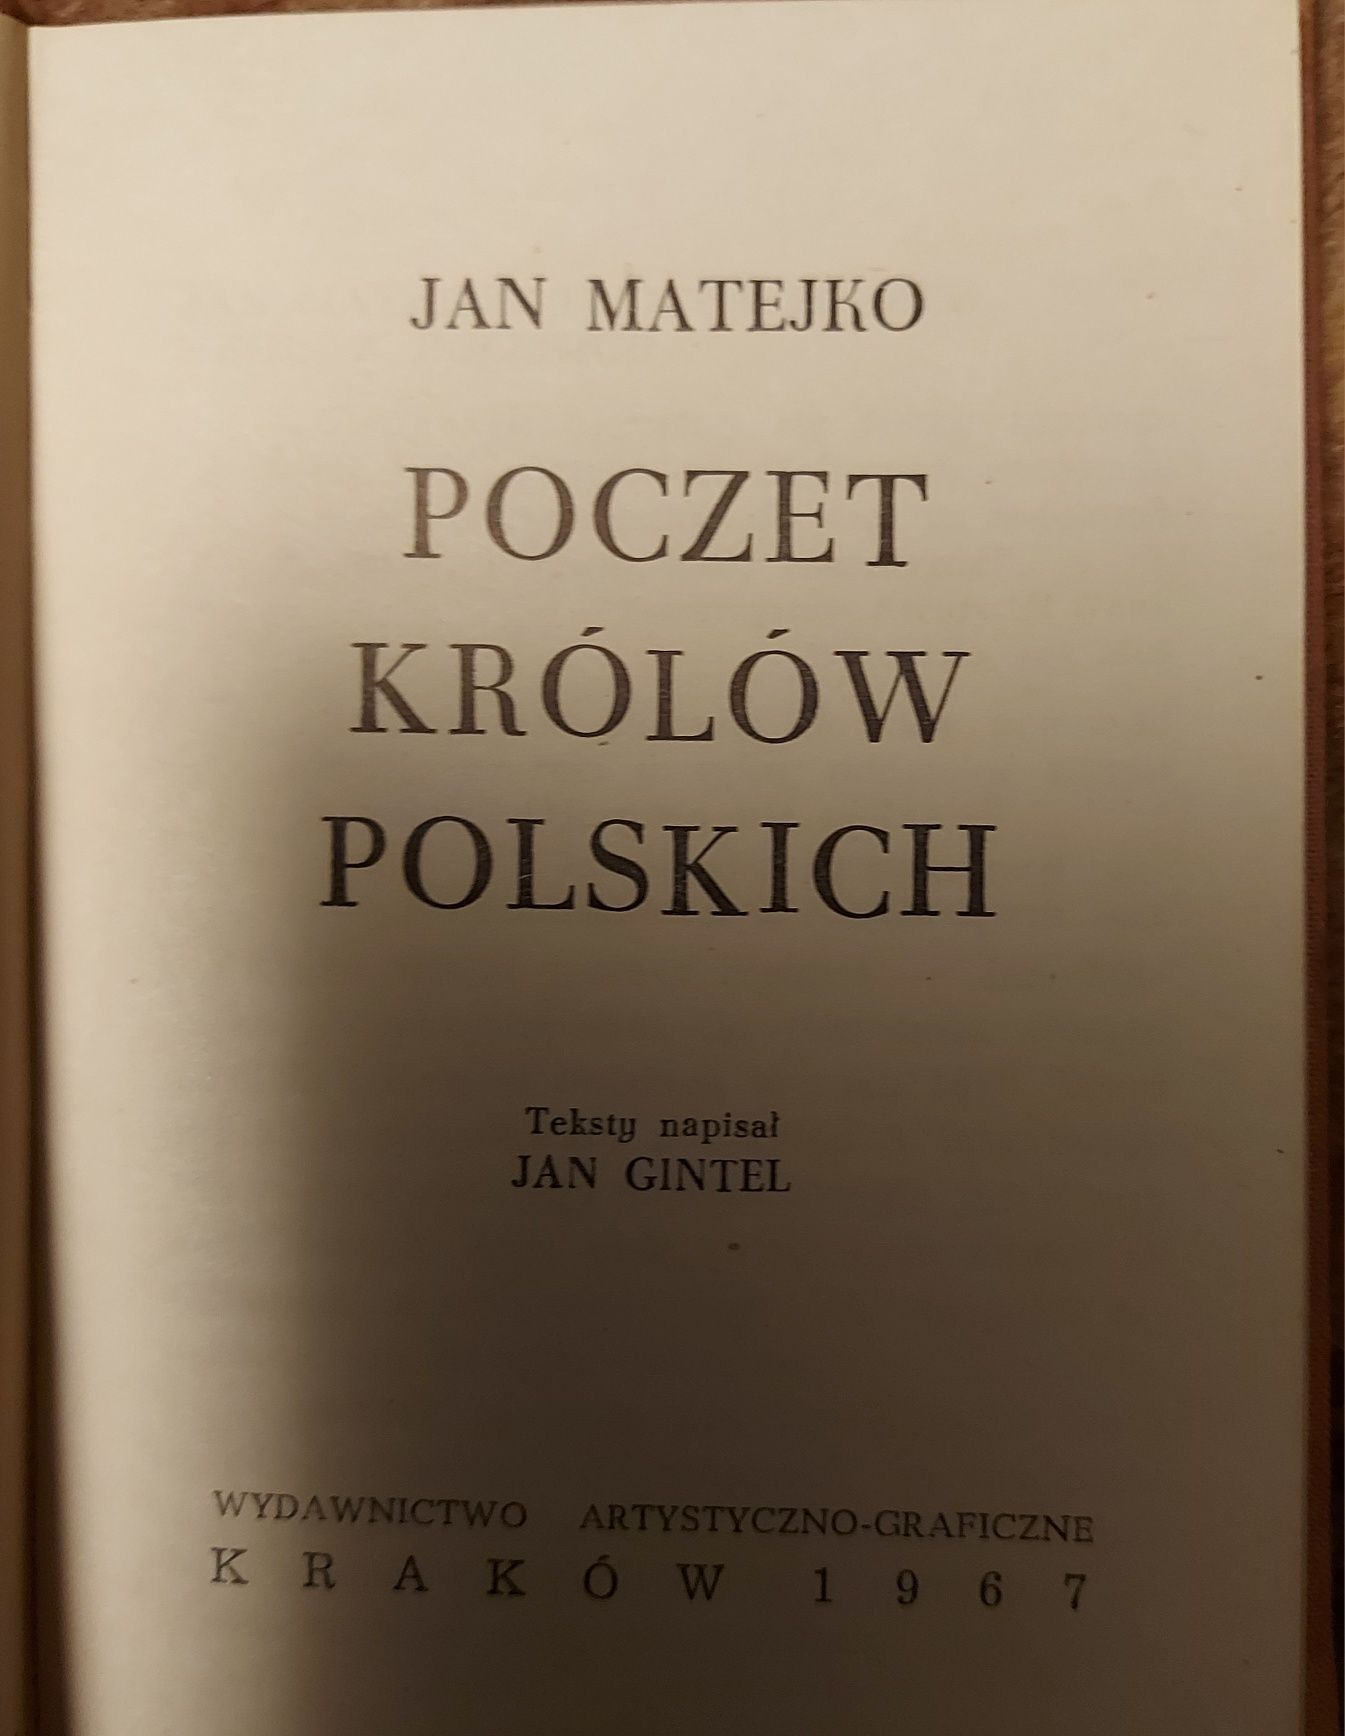 Poczet królów polskich Jan Matejko